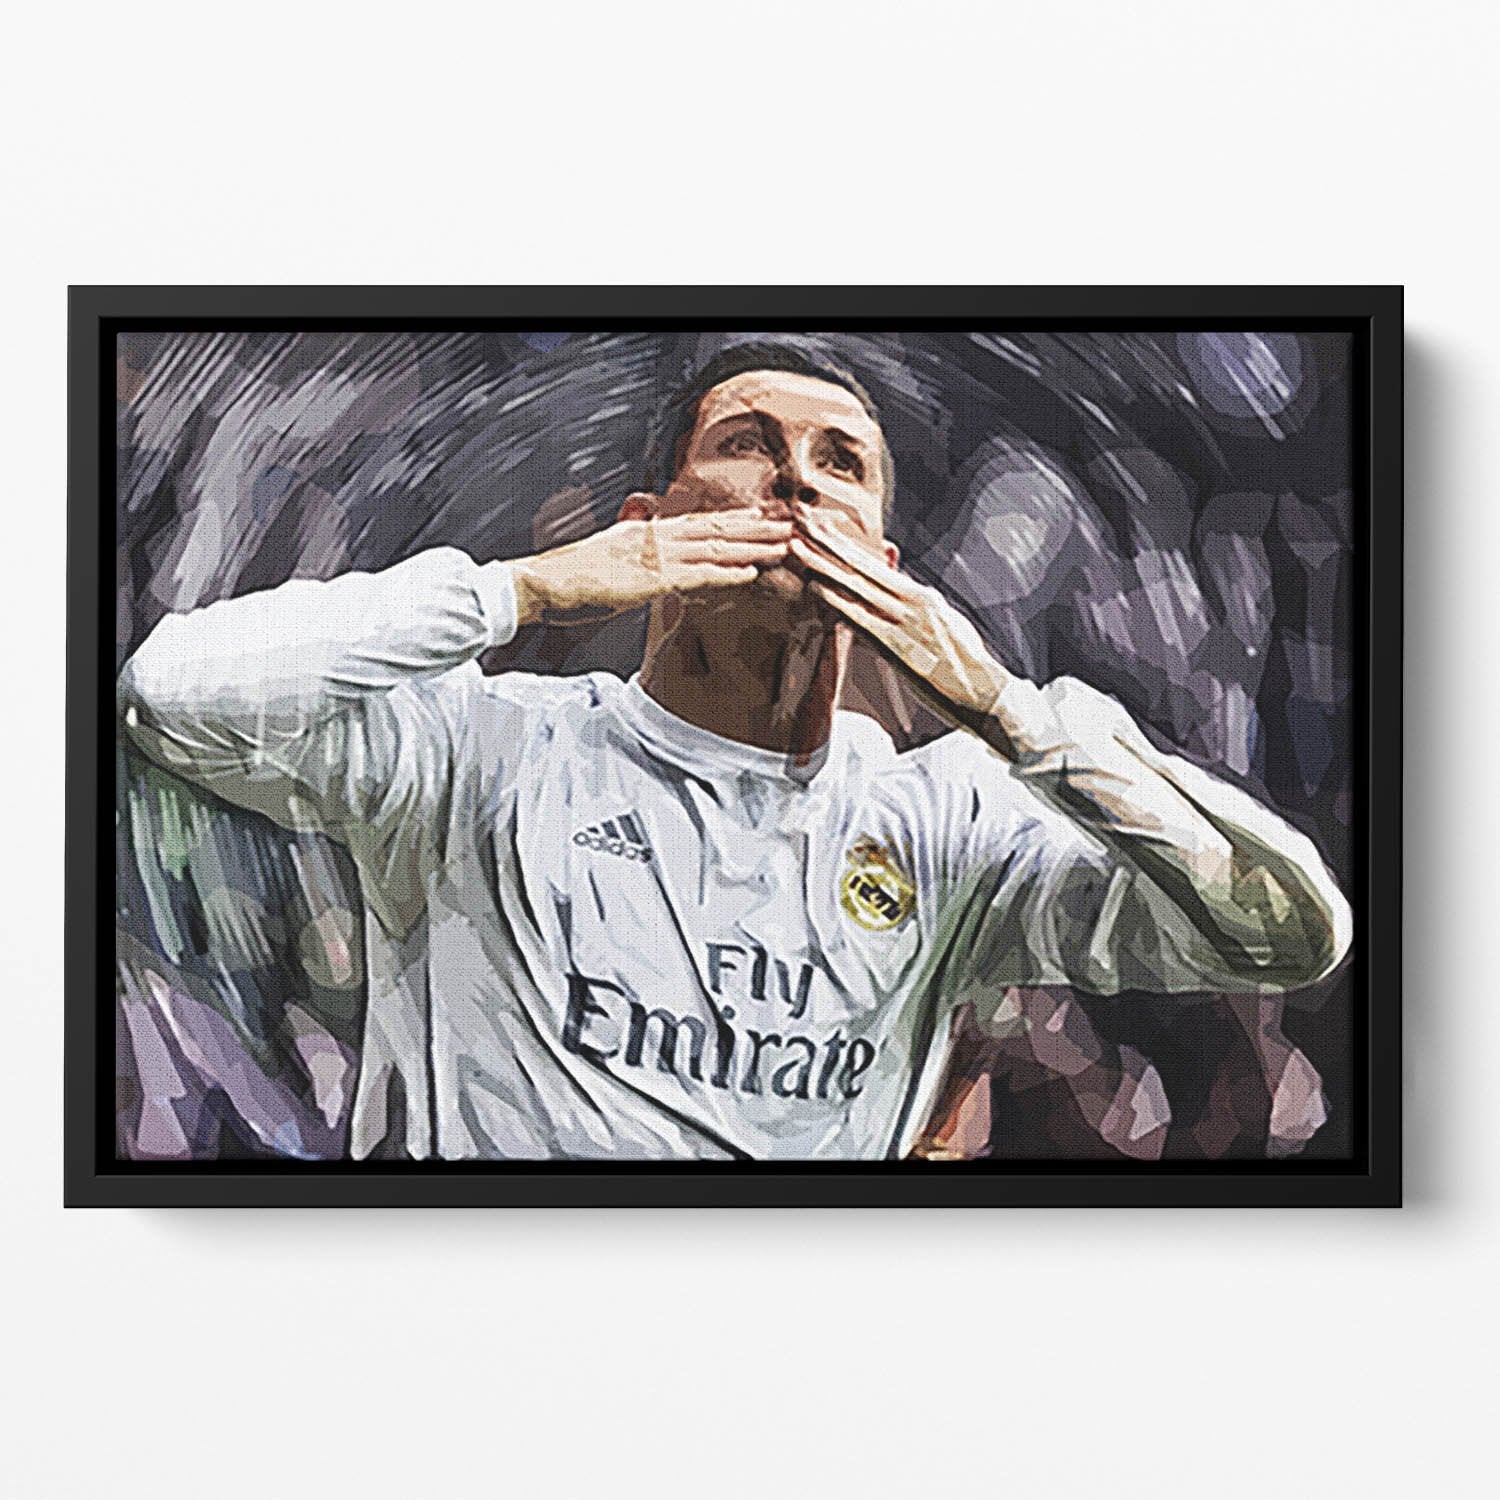 Cristiano Ronaldo Kiss Floating Framed Canvas